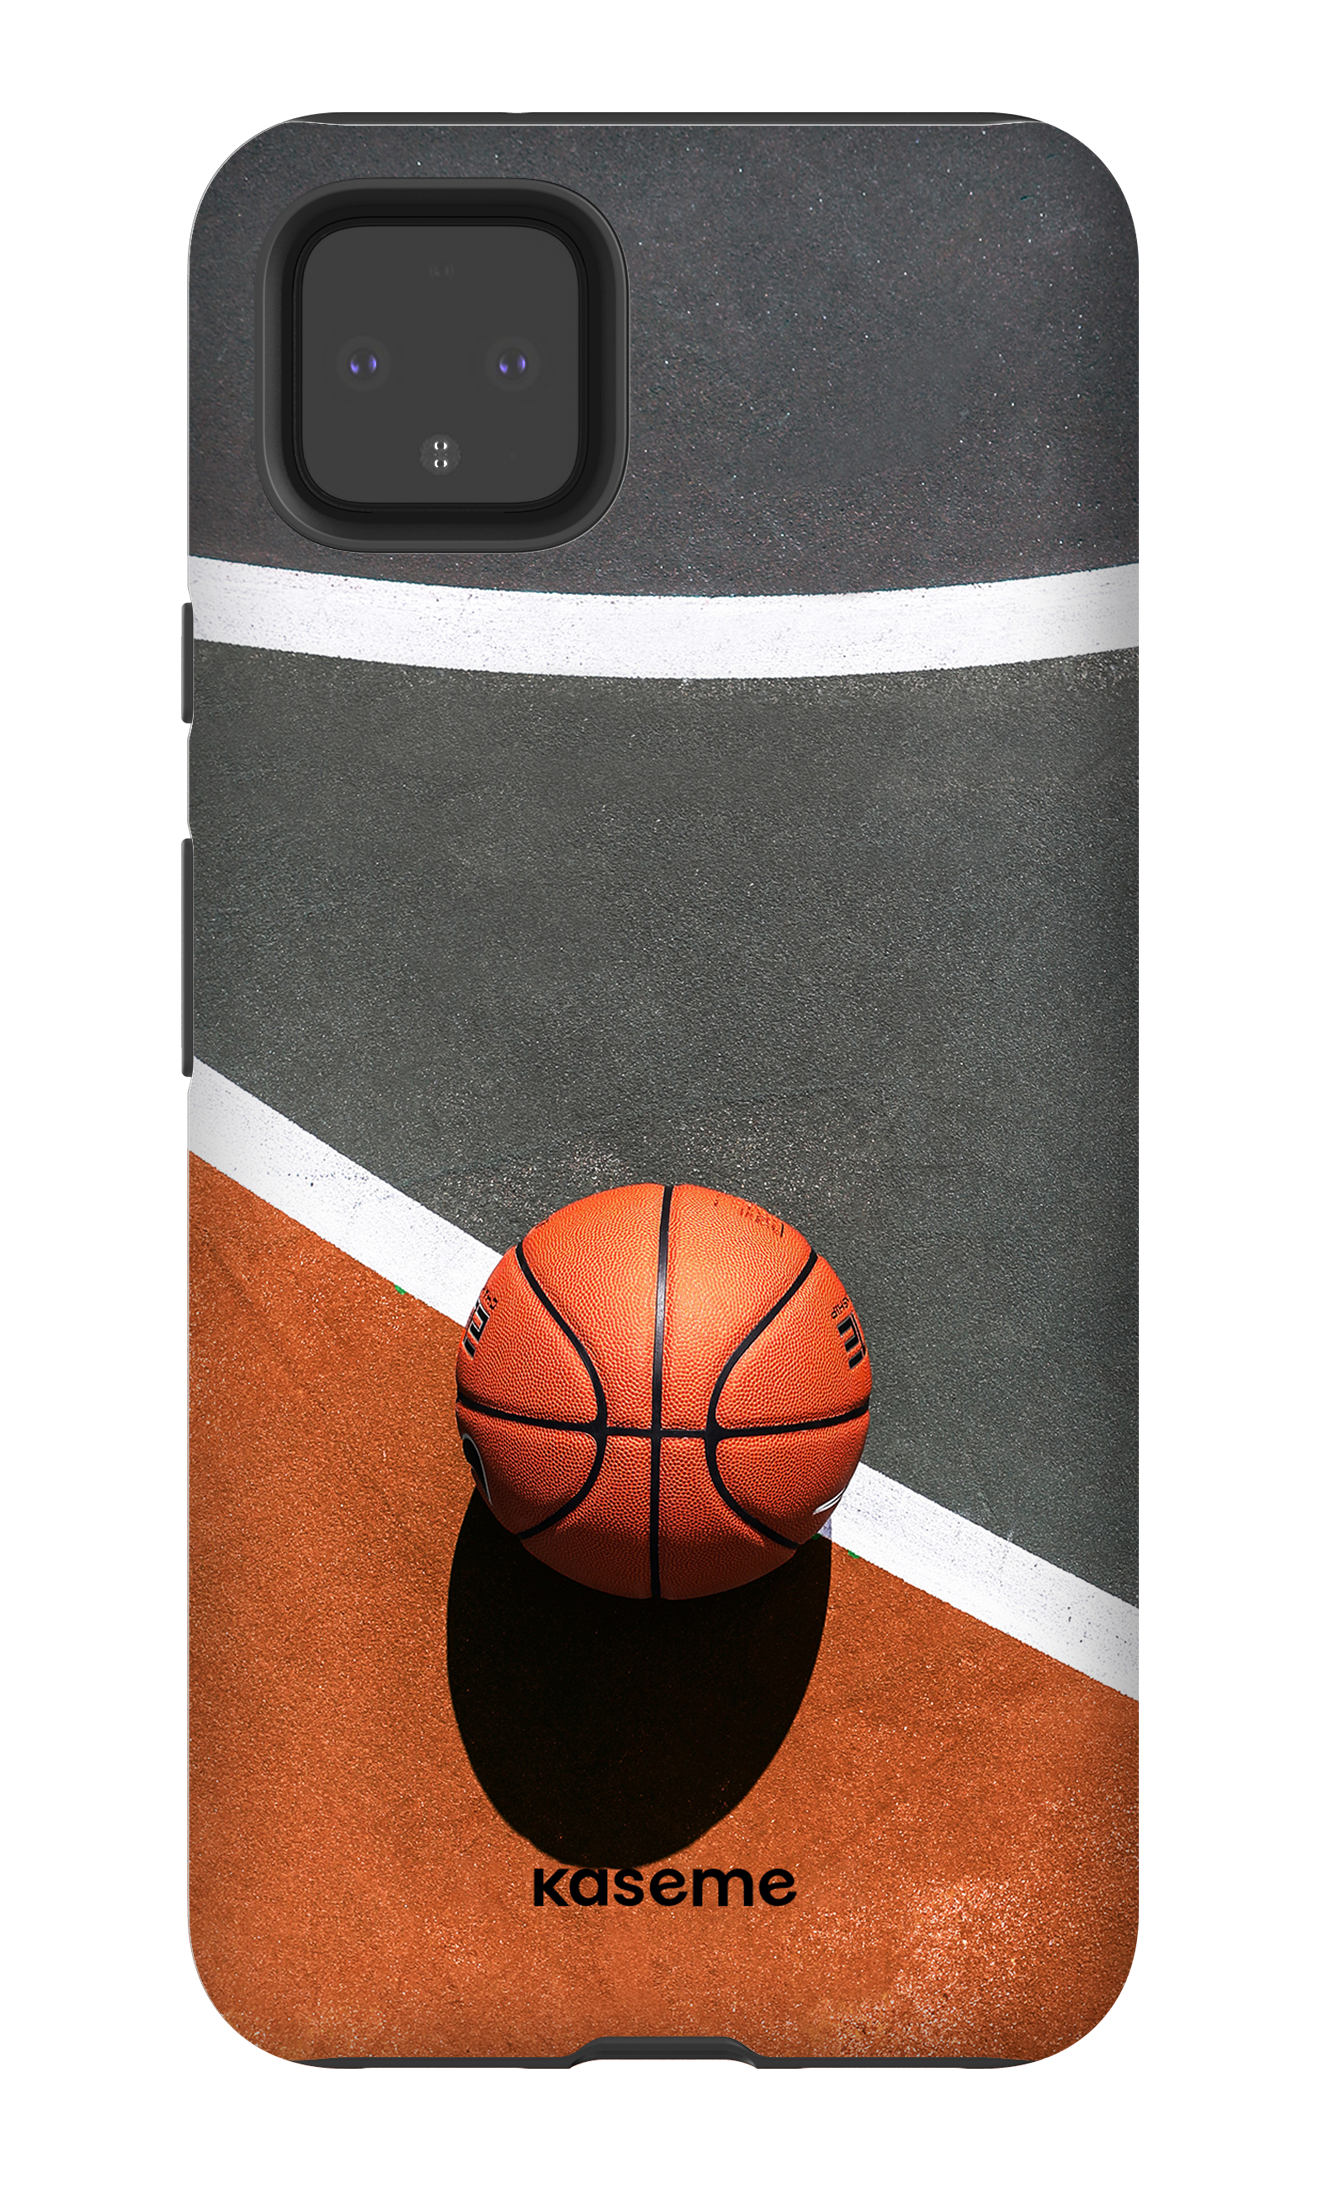 Baller - Google Pixel 4 XL